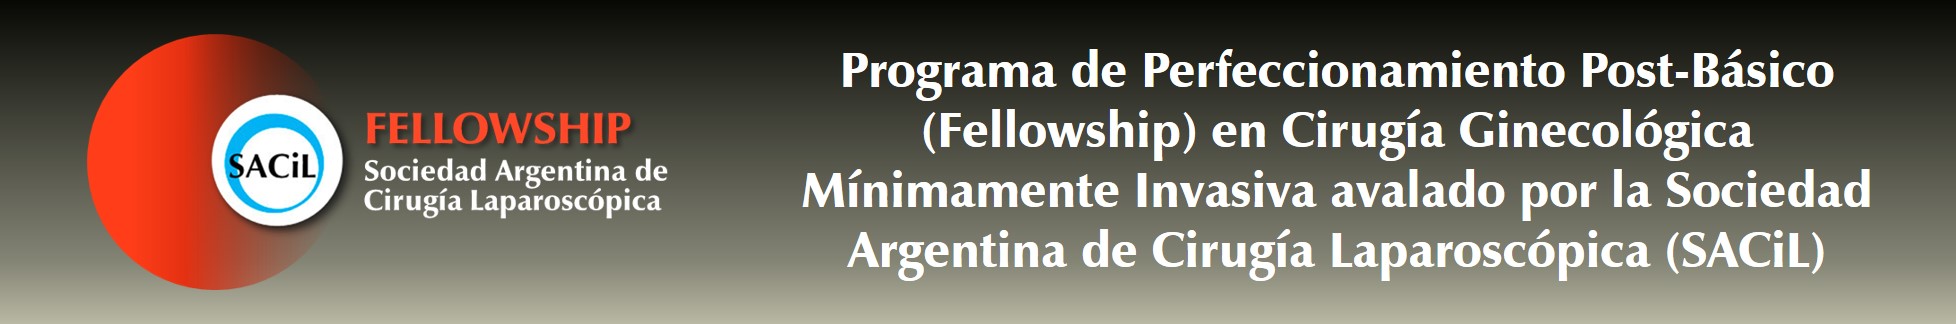 Banner Fellowship